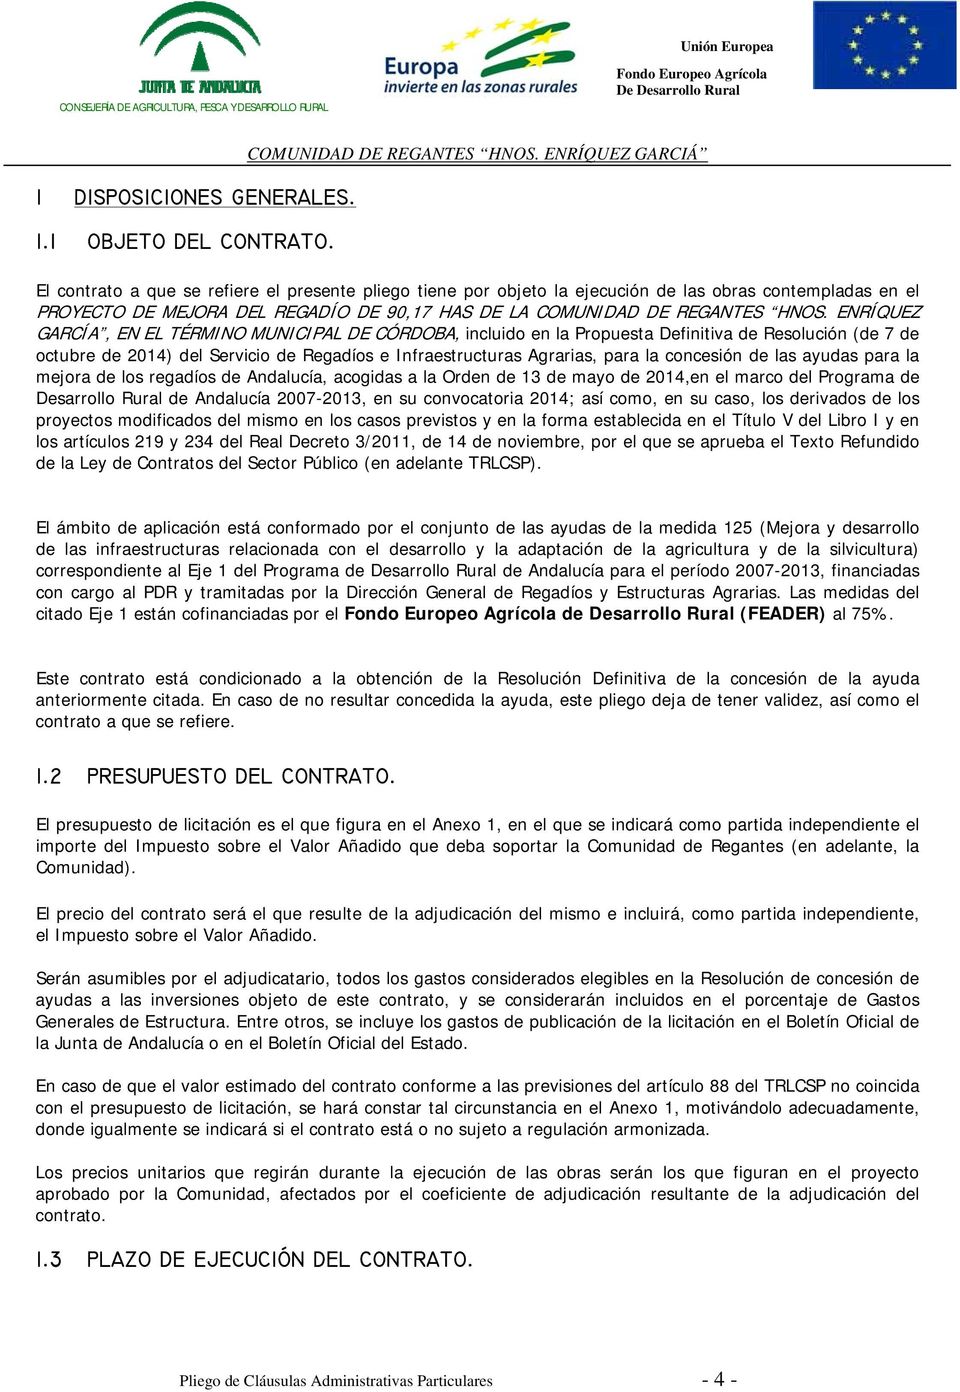 ENRÍQUEZ GARCÍA, EN EL TÉRMINO MUNICIPAL DE CÓRDOBA, incluido en la Propuesta Definitiva de Resolución (de 7 de octubre de 2014) del Servicio de Regadíos e Infraestructuras Agrarias, para la